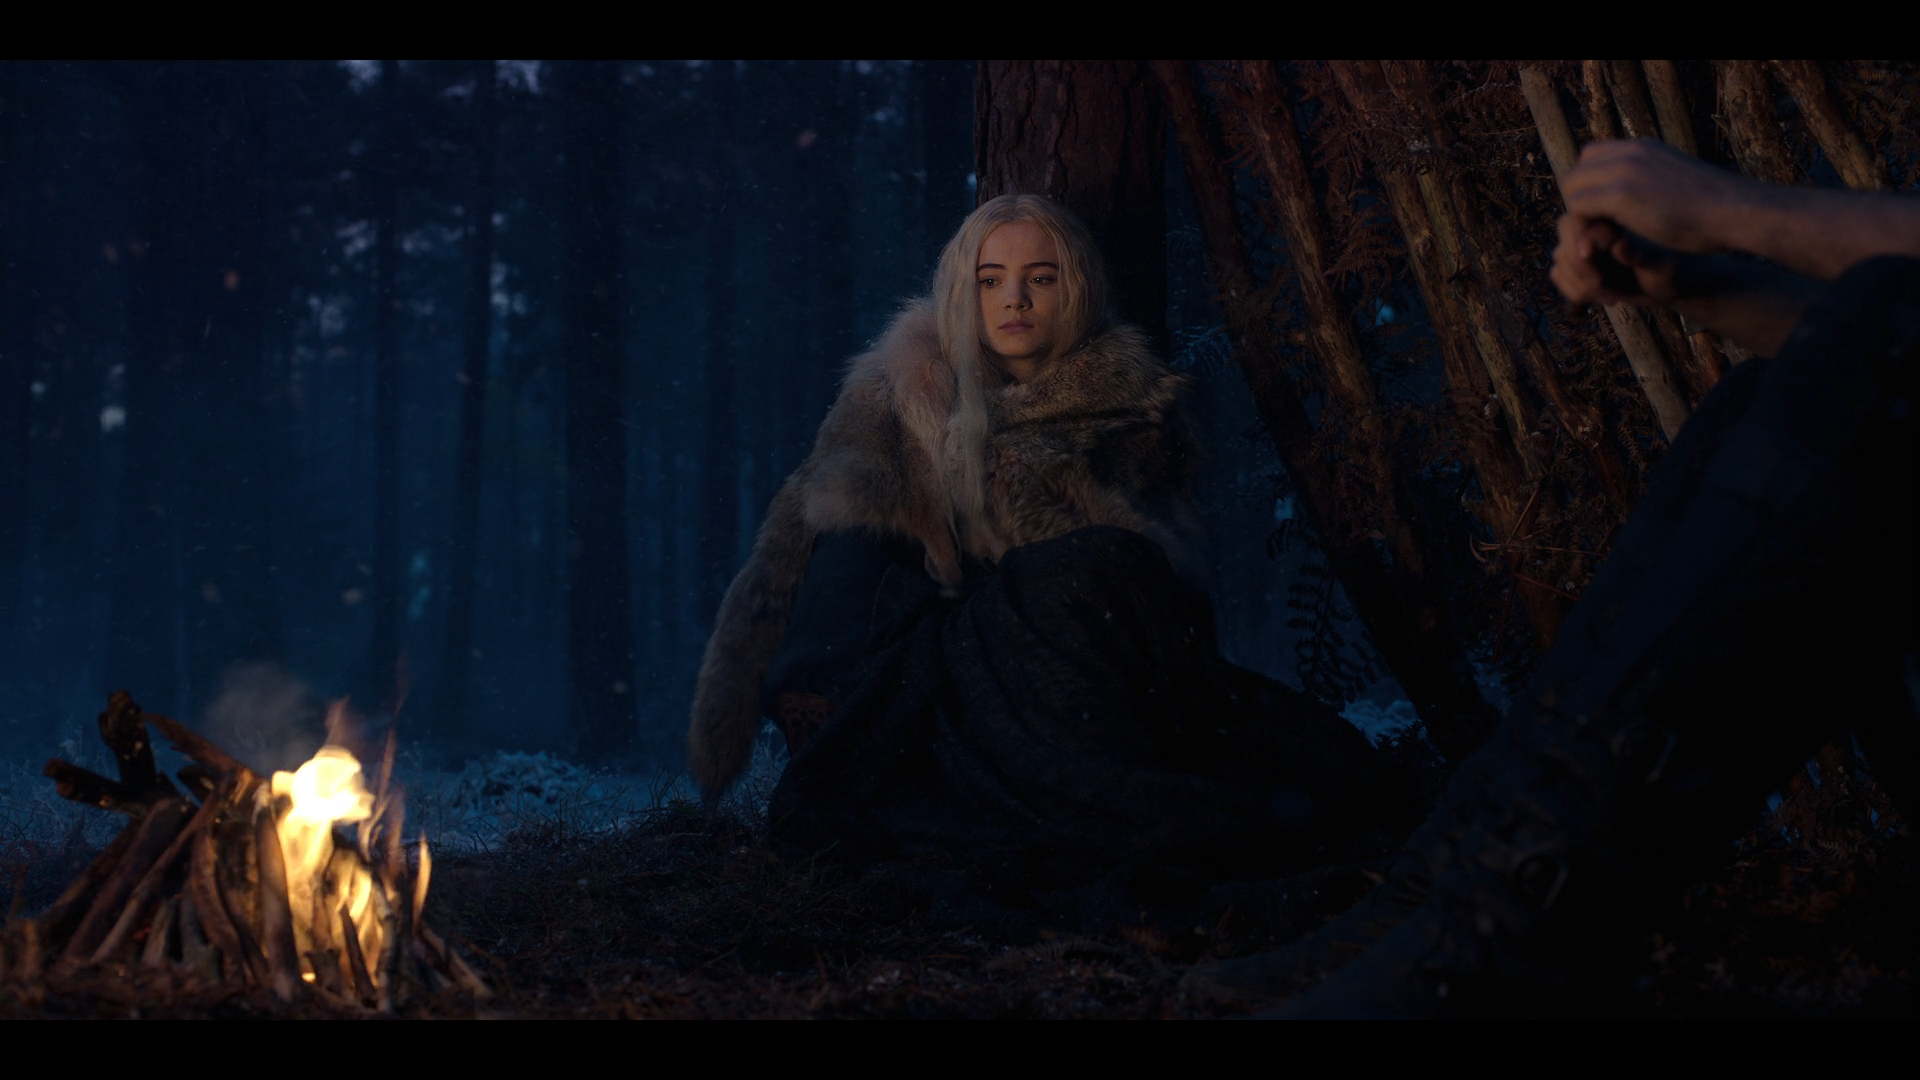 People 1920x1080 The Witcher (TV Series) Geralt of Rivia campfire forest night Fur Shawl blonde film stills Freya Allan Cirilla Fiona Elen Riannon